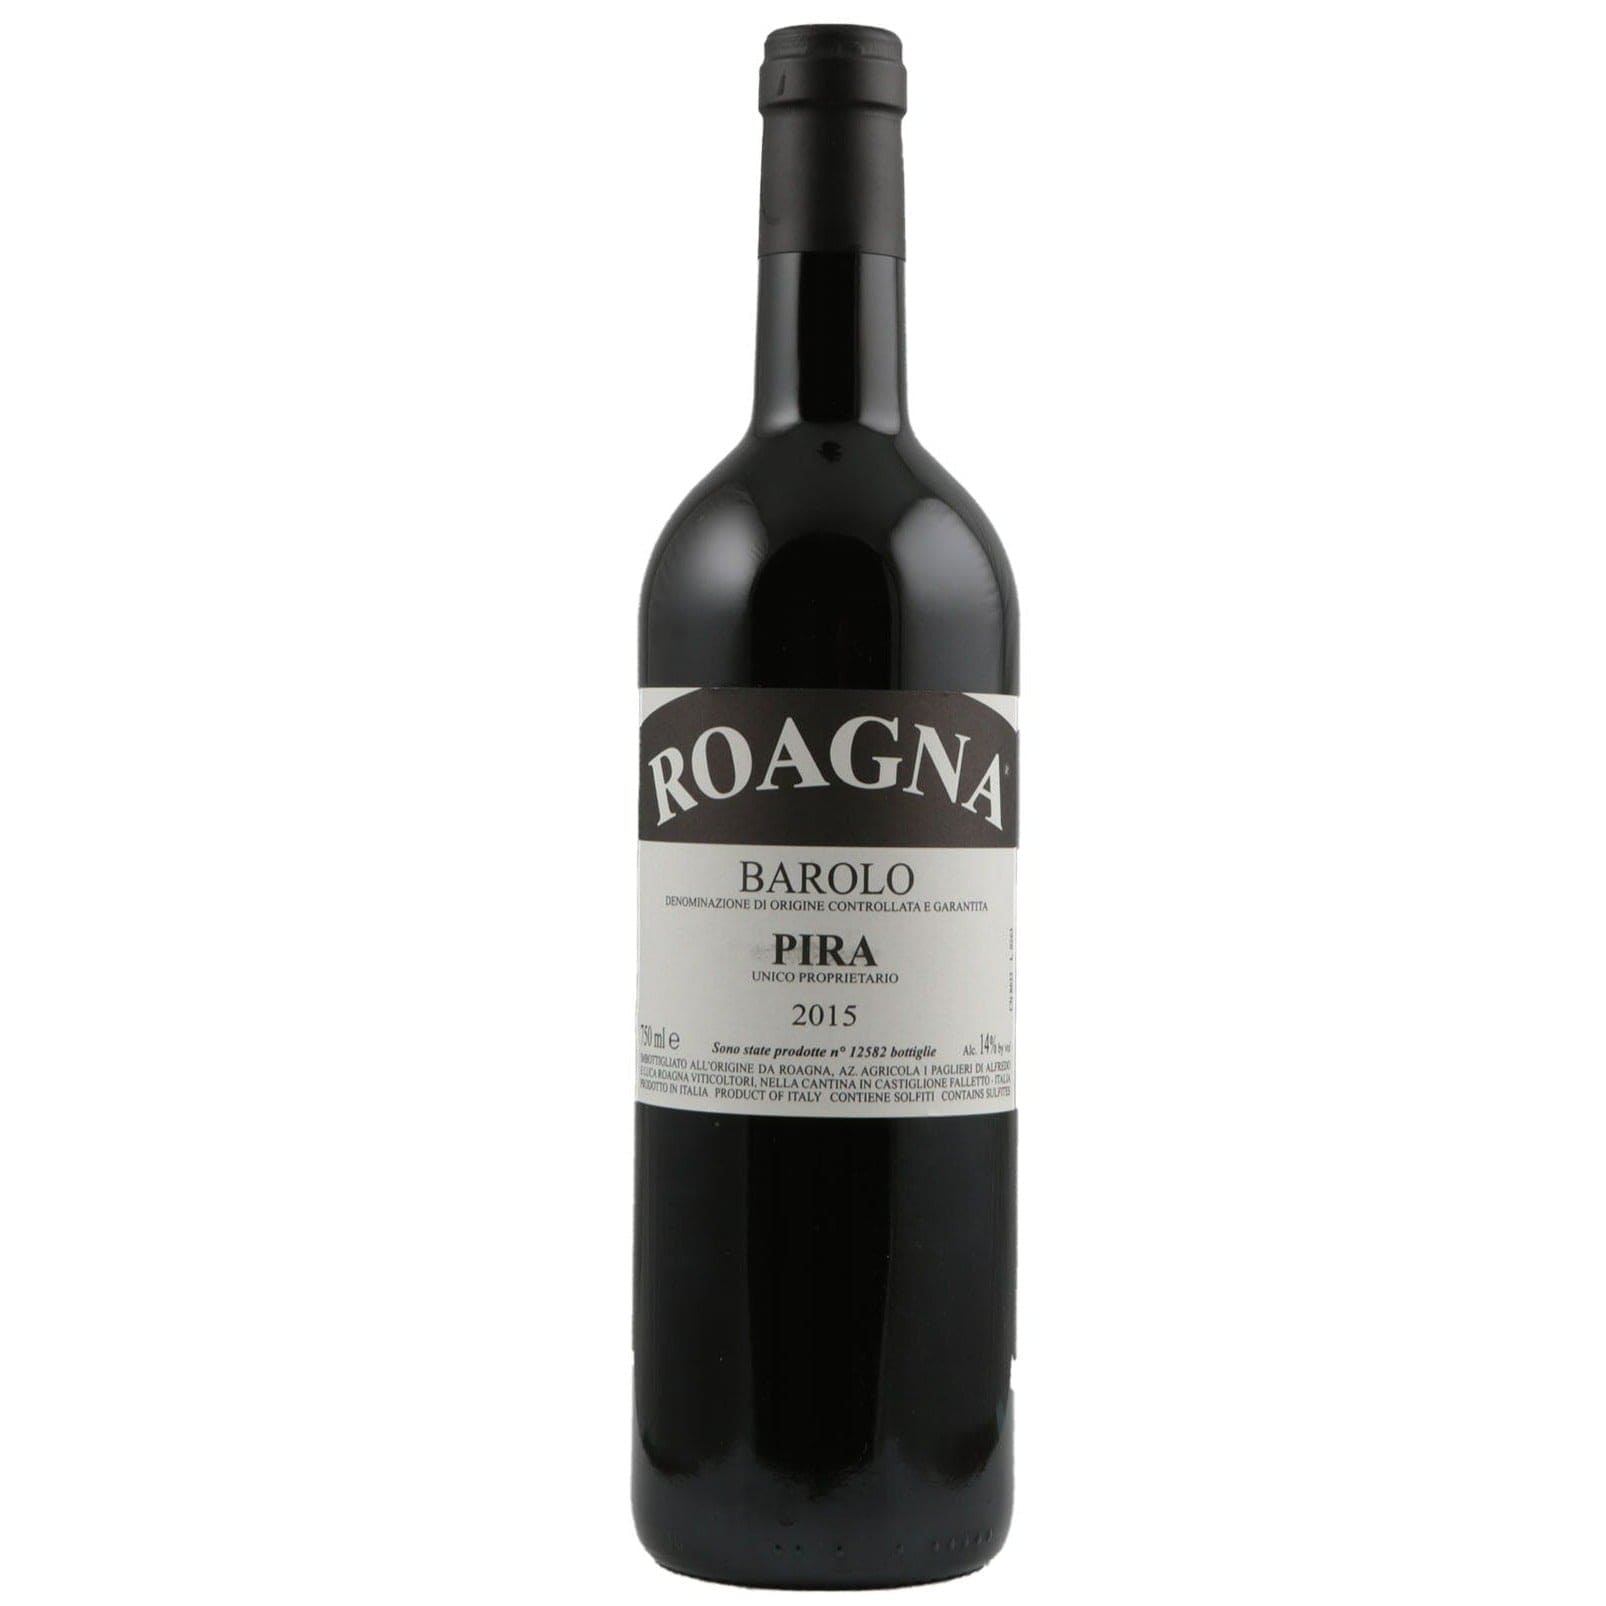 Single bottle of Red wine Roagna, Pira, Barolo, 2015 100% Nebbiolo